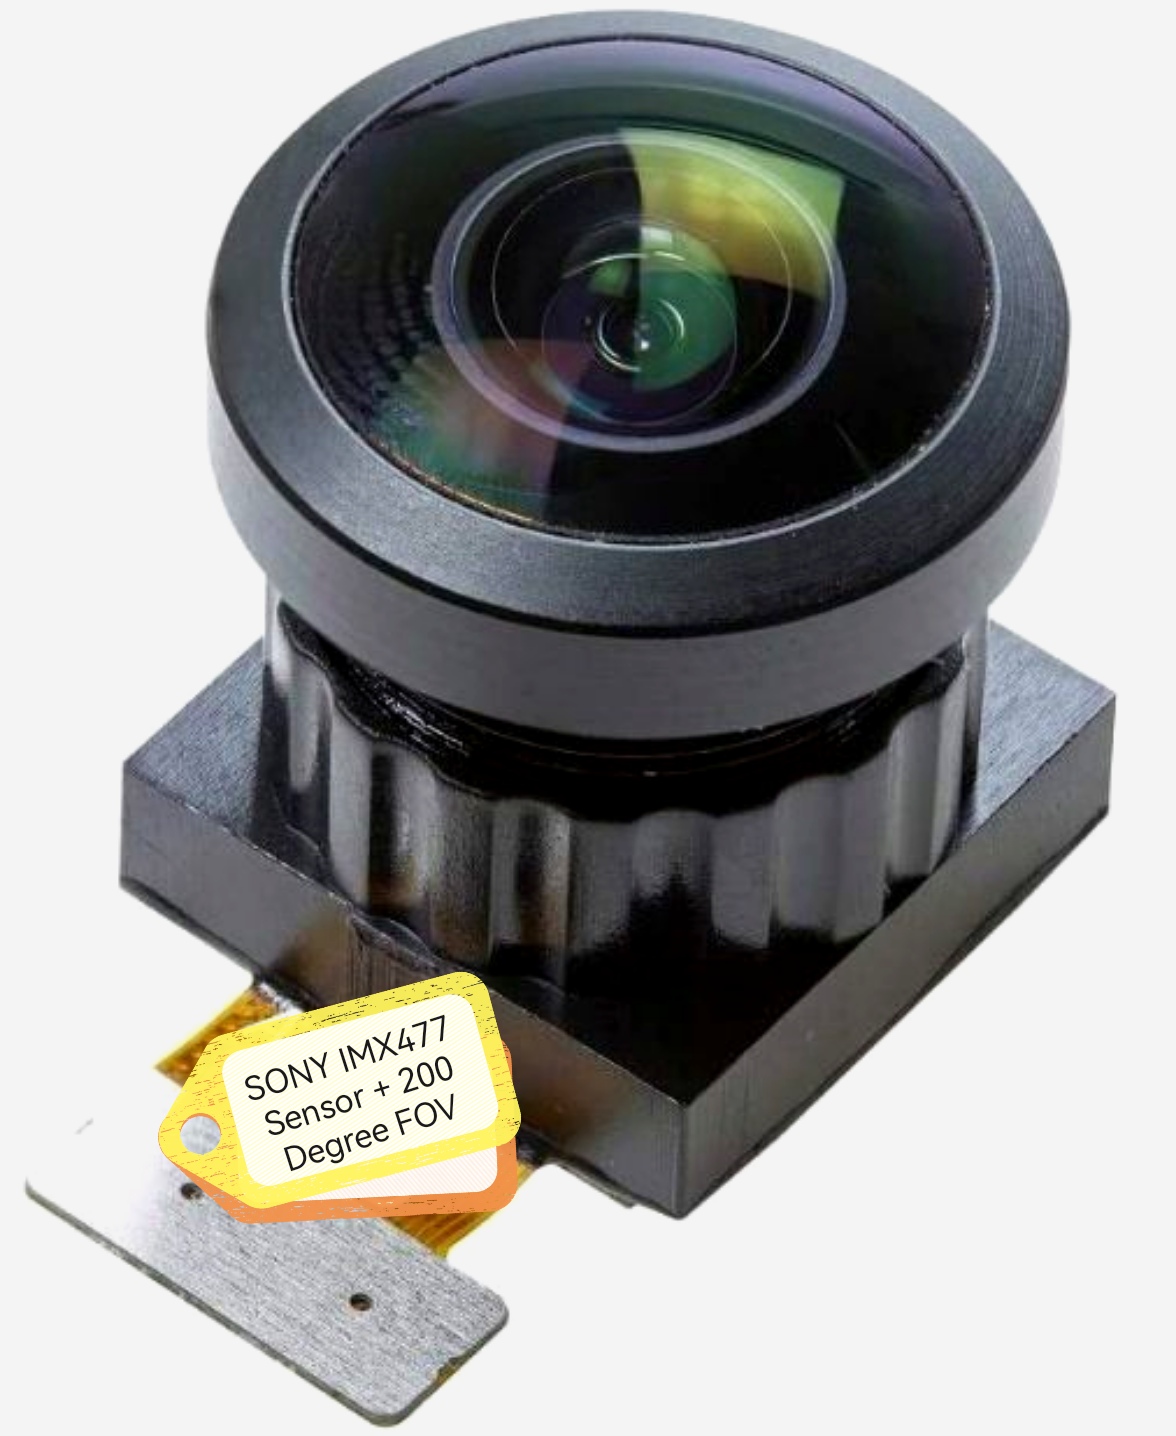 12MP Geniş Açılı Kamera Modülü, 200 Derece FOV'lu SONY IMX477 Sensör